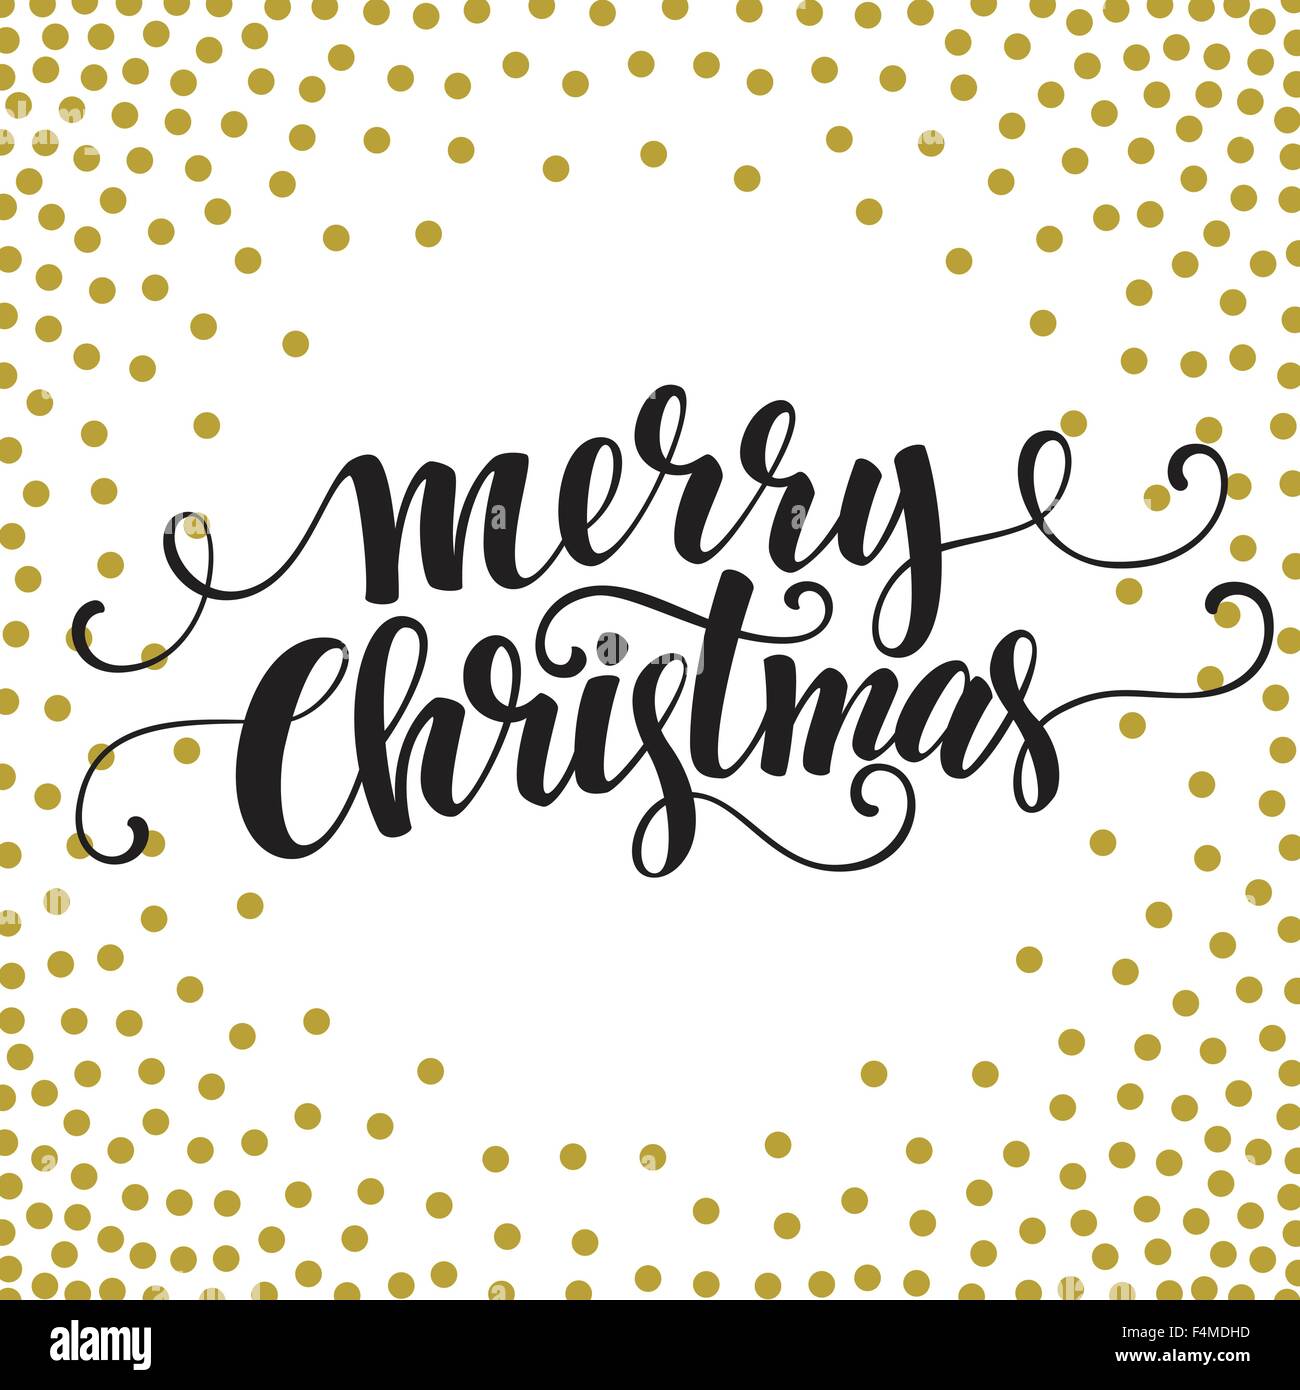 Buon Natale Glitter Scritta.Disegnato A Mano Carta Tipografia Buon Natale Saluti Gold Glitter Scritte A Mano Illustrazione Vettoriale Immagine E Vettoriale Alamy